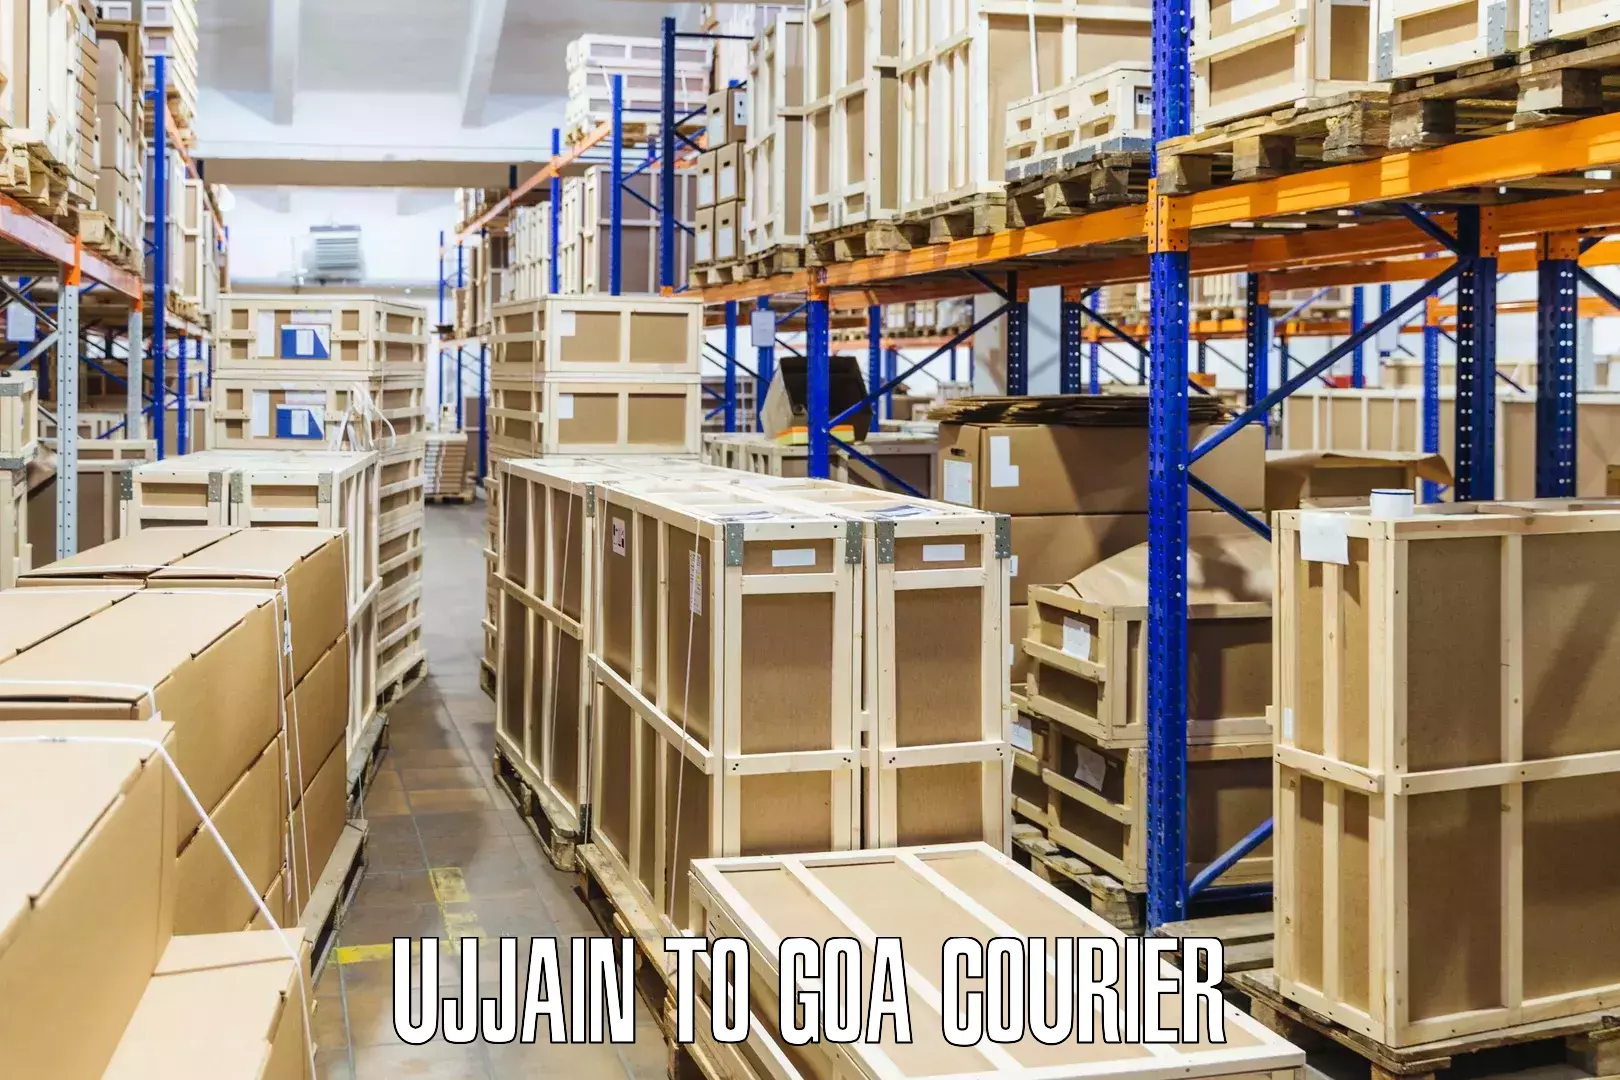 Customer-centric shipping Ujjain to IIT Goa